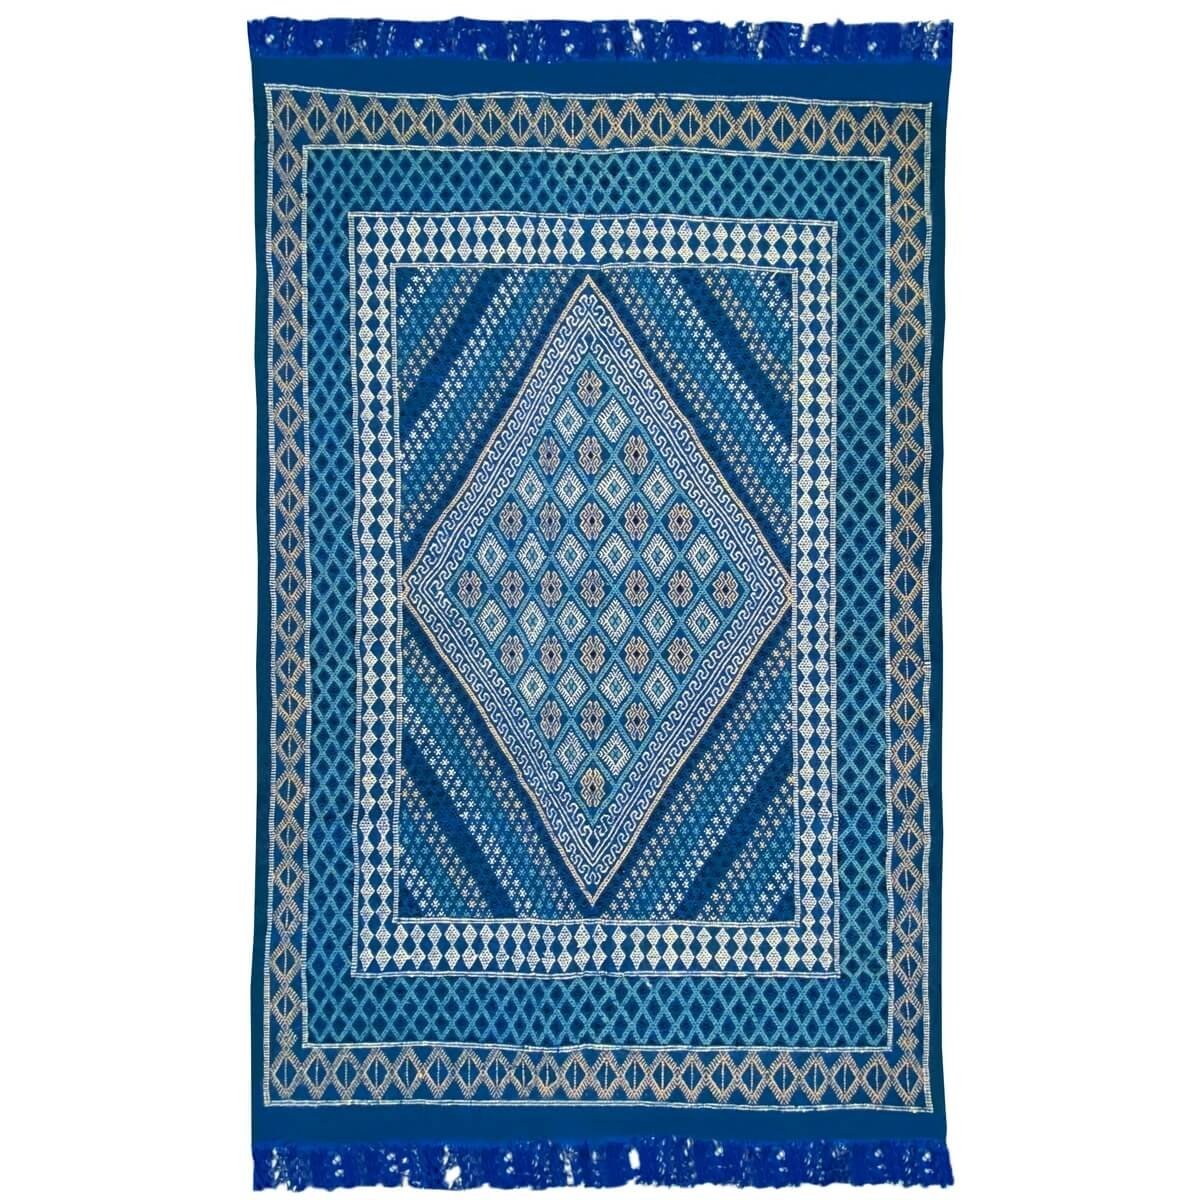 Berber tapijt Tapijt Margoum Nidhal 120x180 Blauw/Wit (Handgeweven, Wol, Tunesië) Tunesisch Margoum Tapijt uit de stad Kairouan.